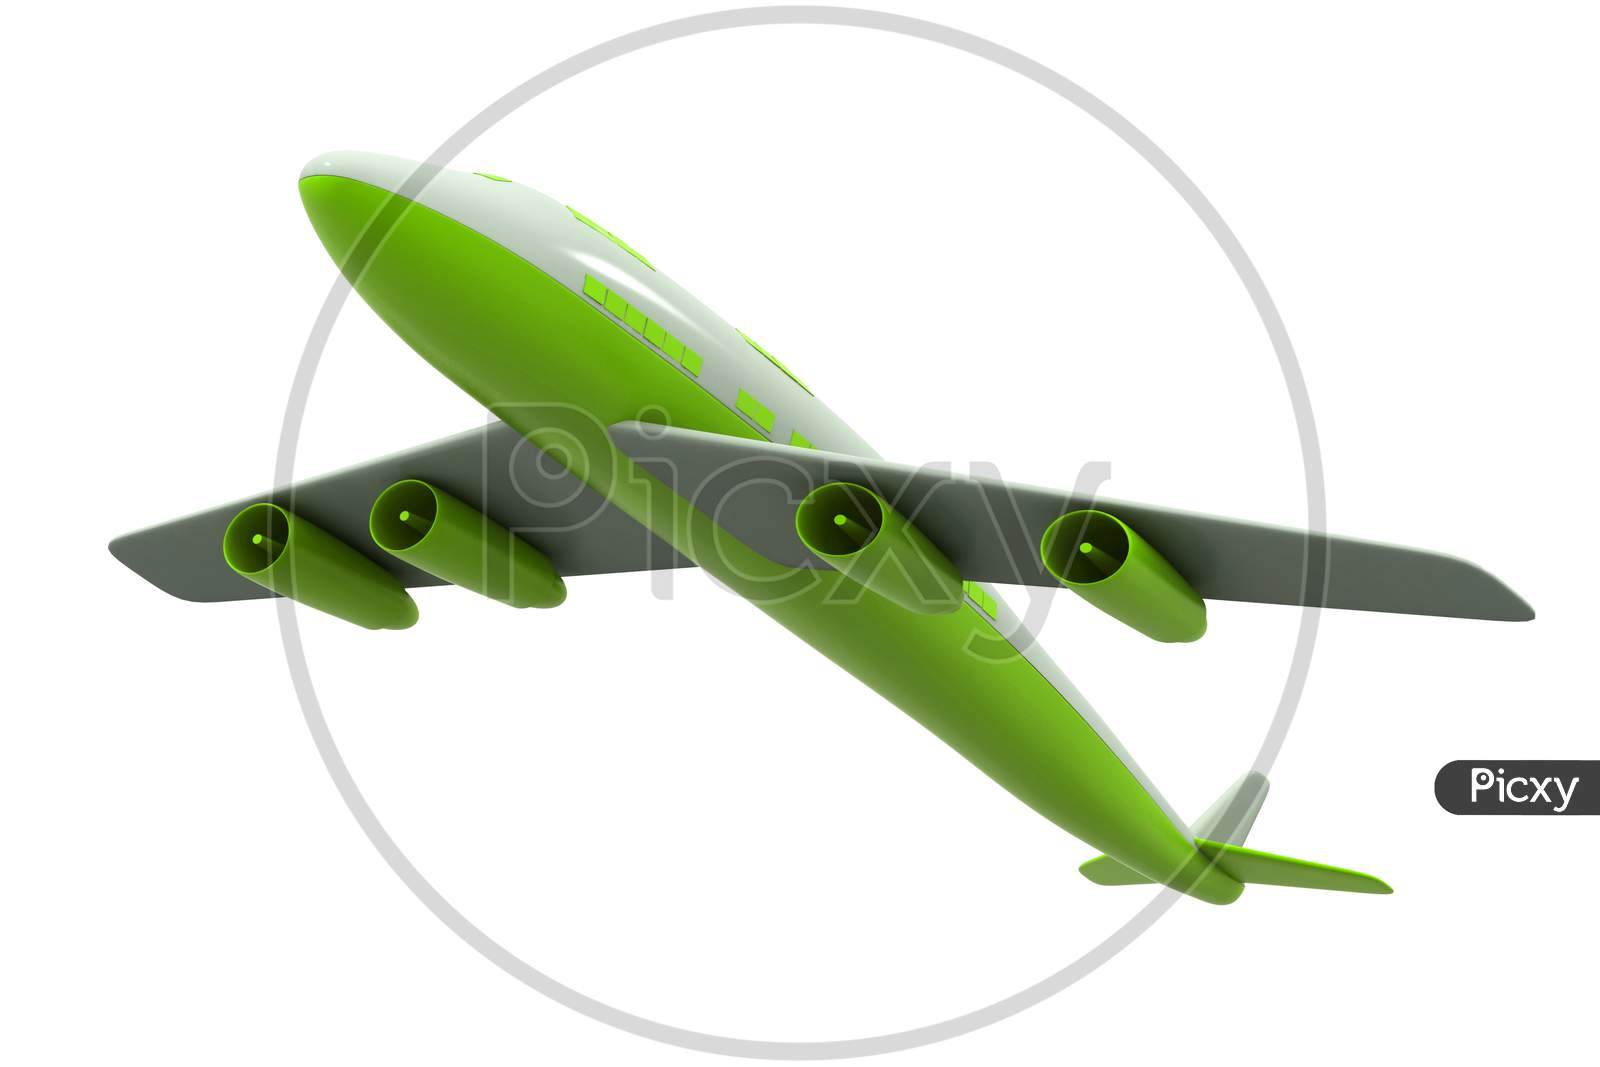 3D Plane